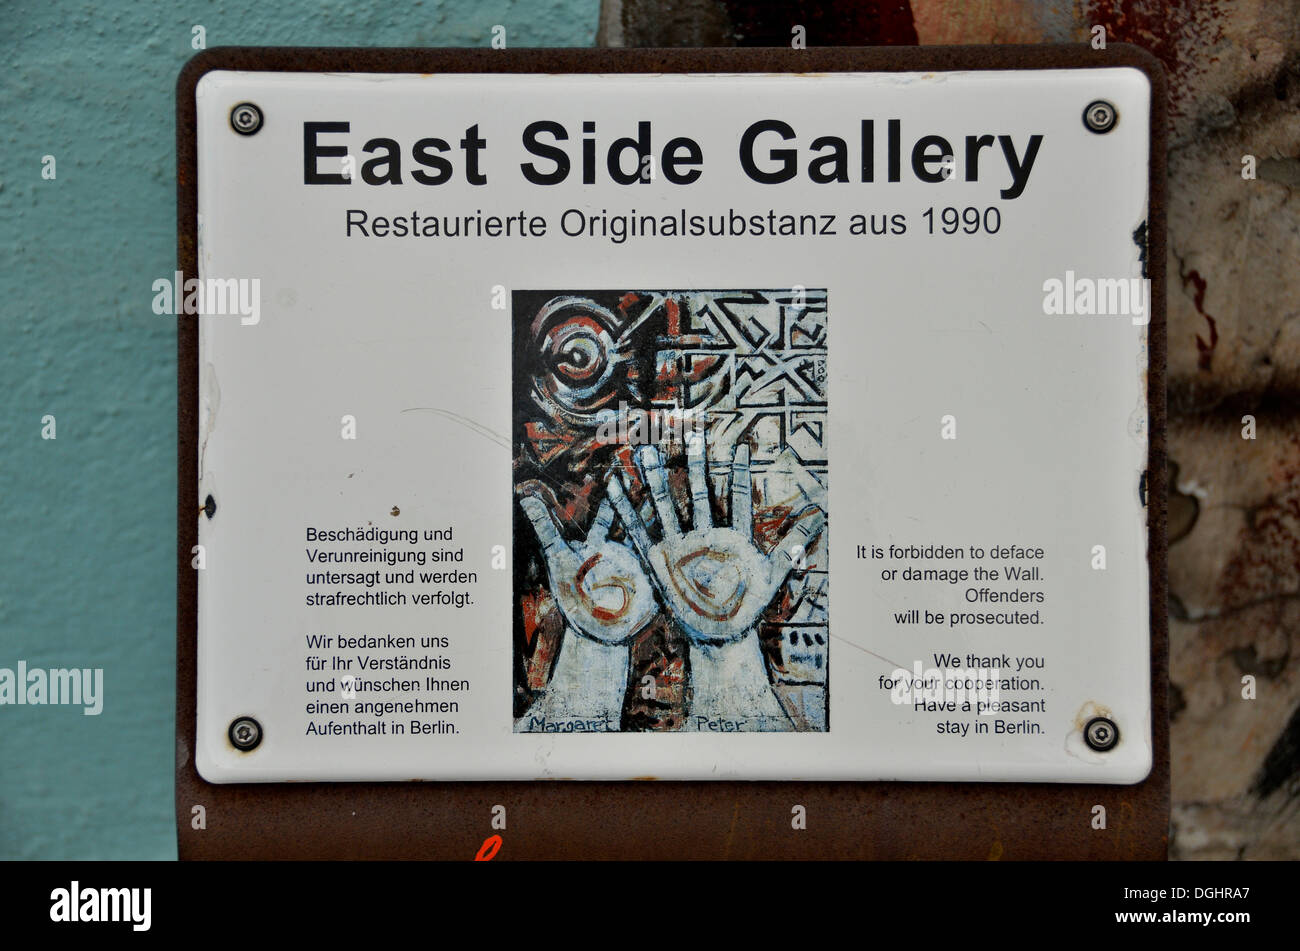 Cartel "East Side Gallery" sobre los restos del muro de Berlín, la East Side Gallery, Berlin-Friedrichshain, PublicGround Foto de stock